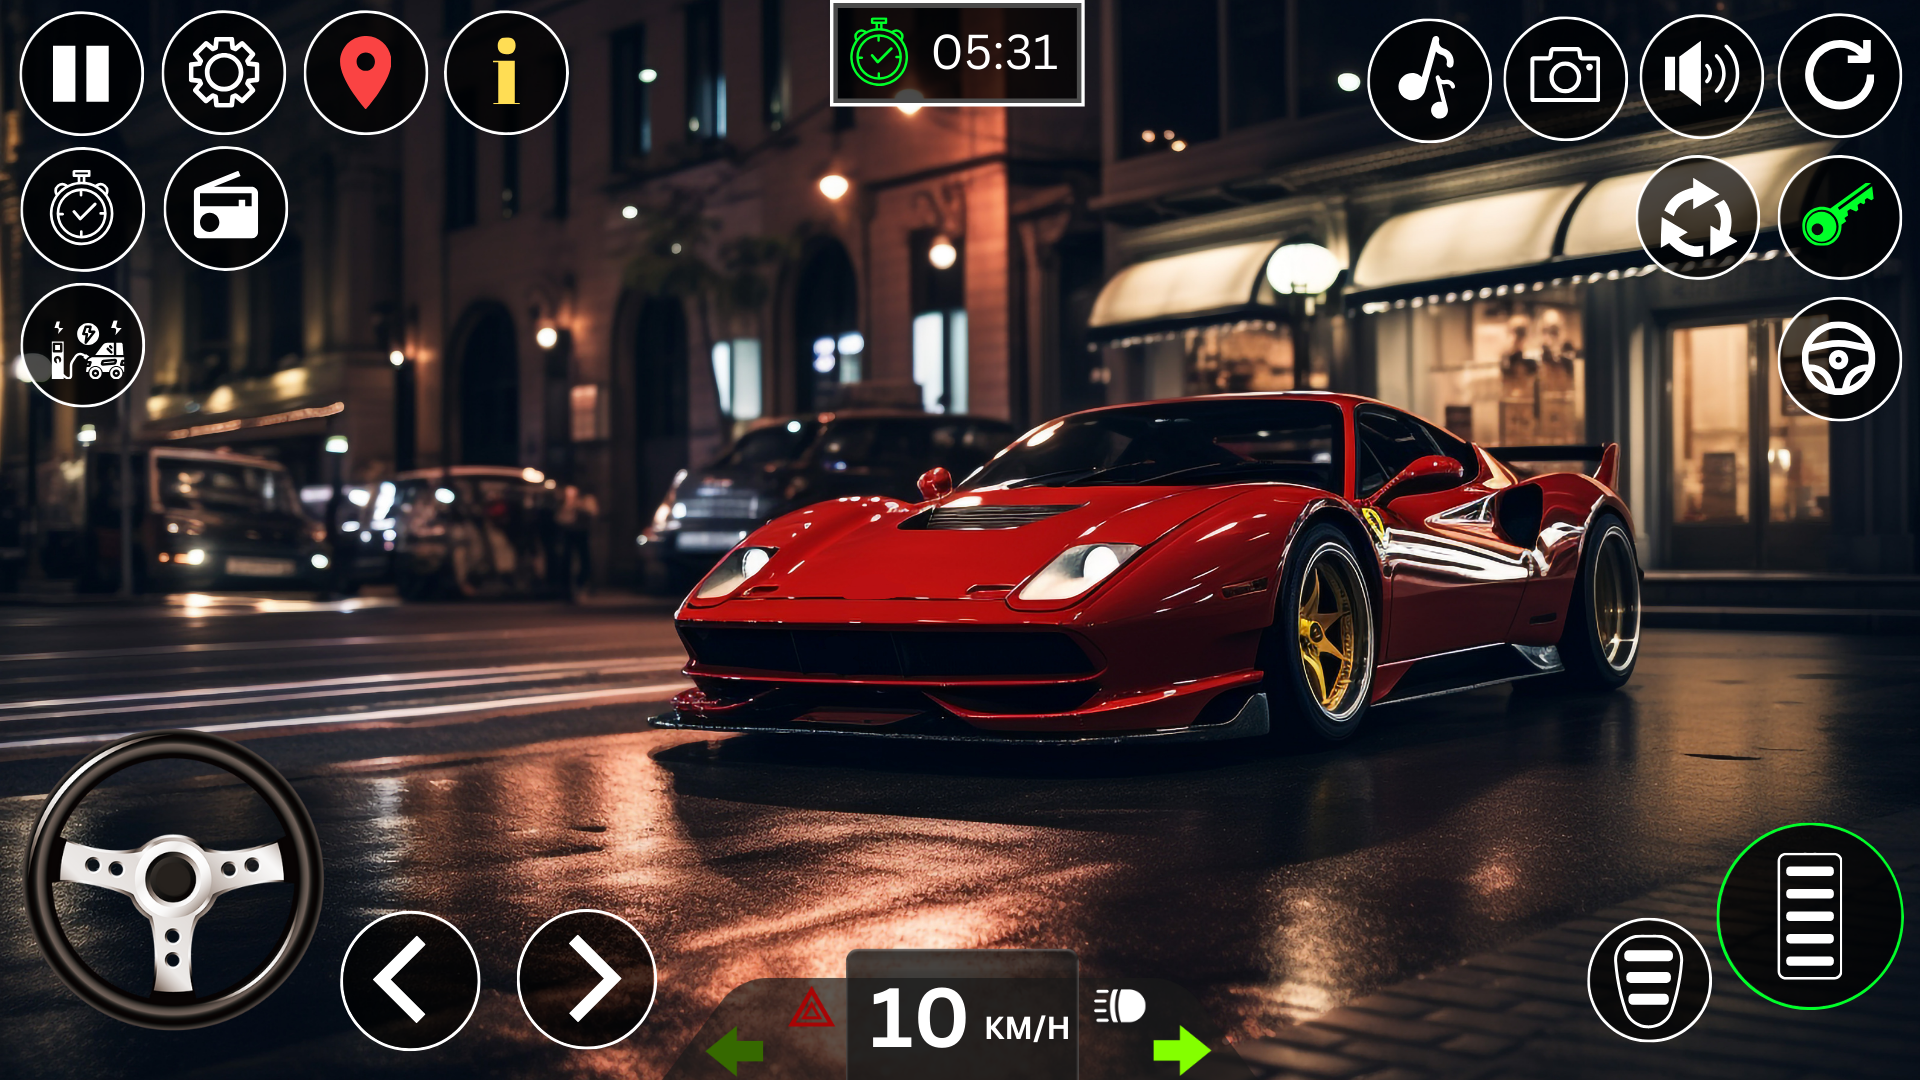 Screenshot 1 of Carro Simulador Dirigindo 1.0.41